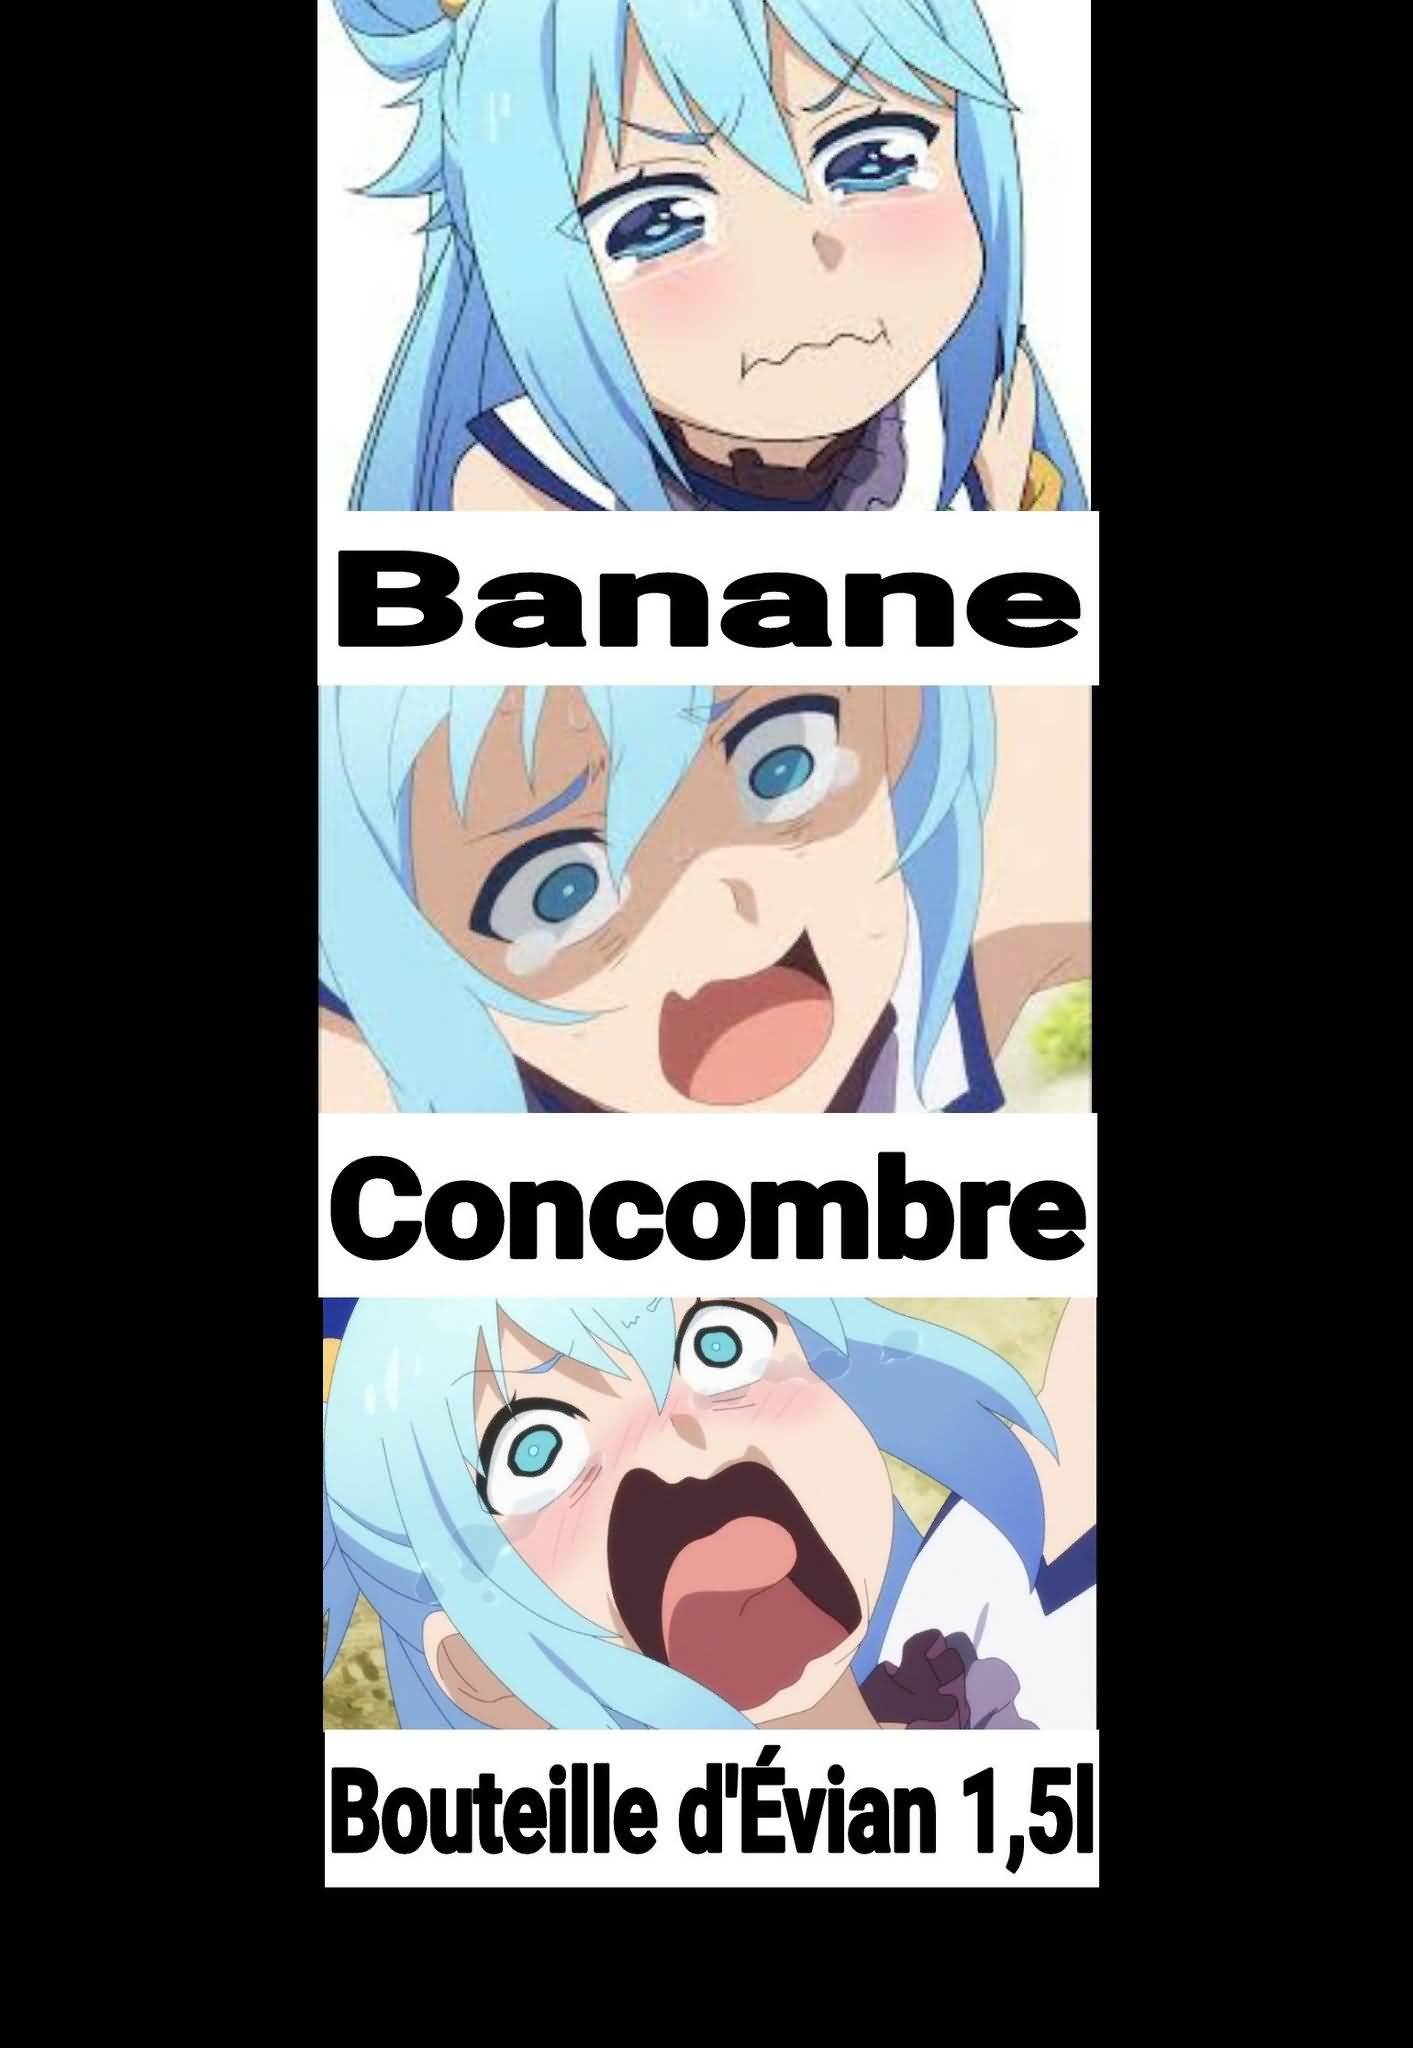 Banane Concombre Aqua Meme